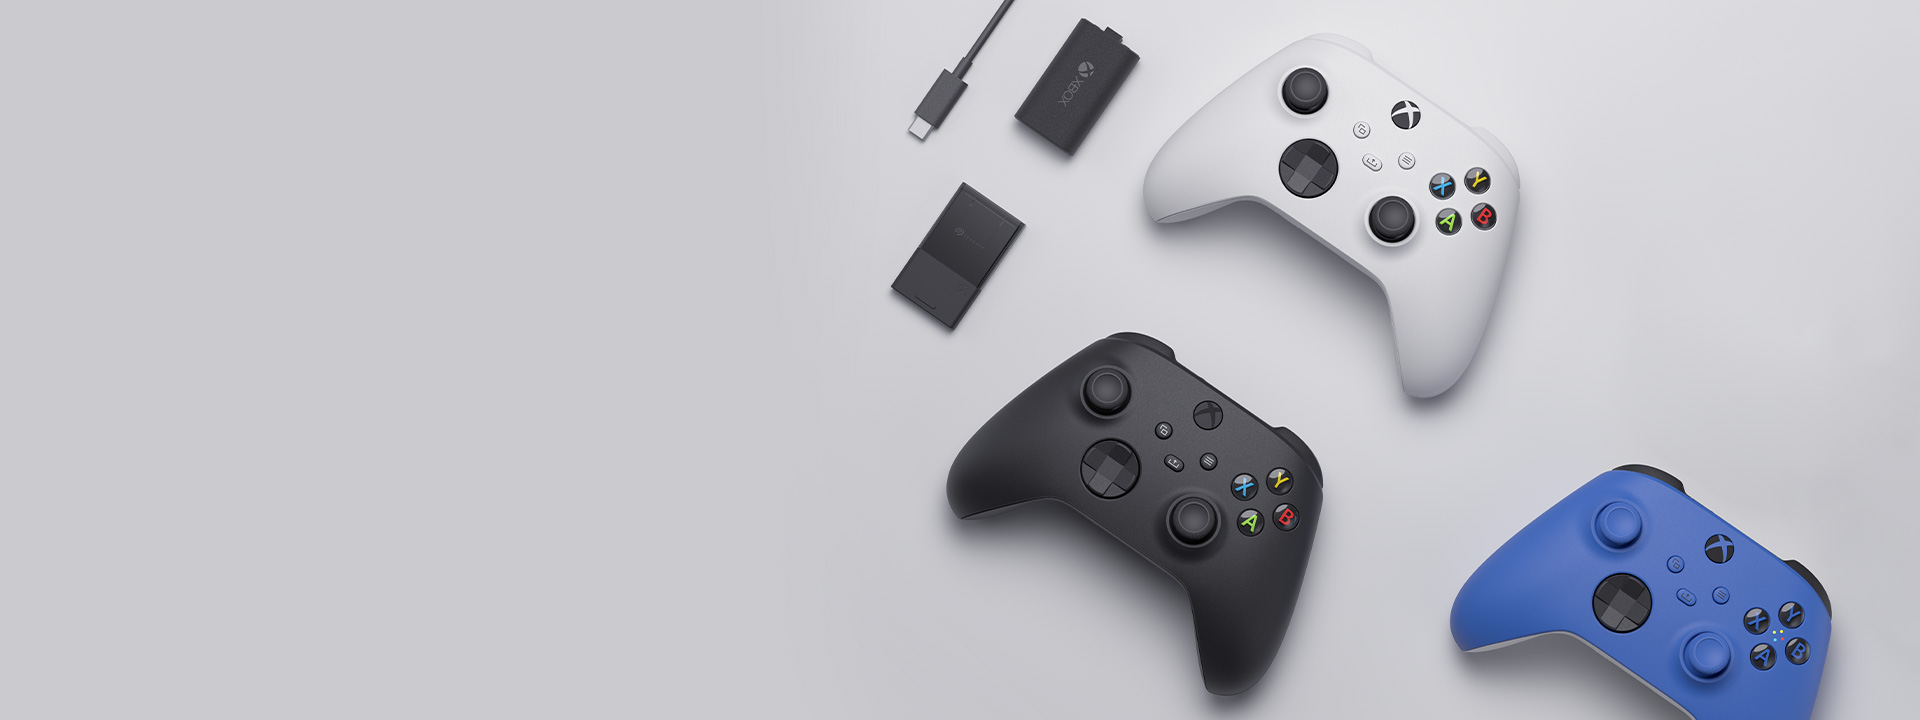 Verschiedene Xbox-Zubehörteile, darunter der Xbox Wireless Controller, das Play and Charge-Kit und die Seagate Speicher-Erweiterungskarte für die Xbox Series X|S, sind nebeneinander angeordnet.